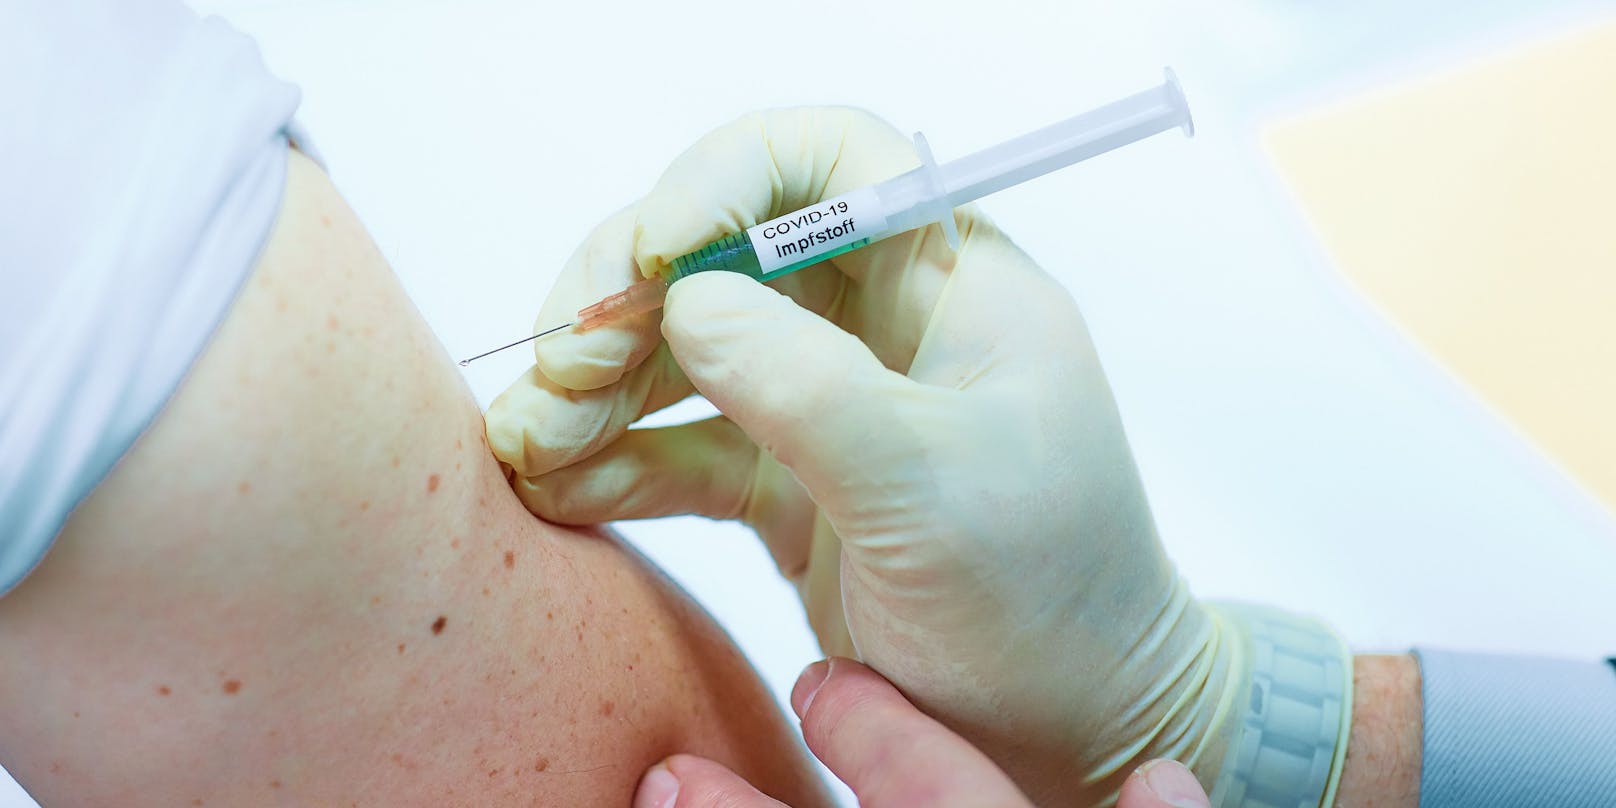 Der Corona-Impfstoff wird in den Oberarmmuskel gespritzt.